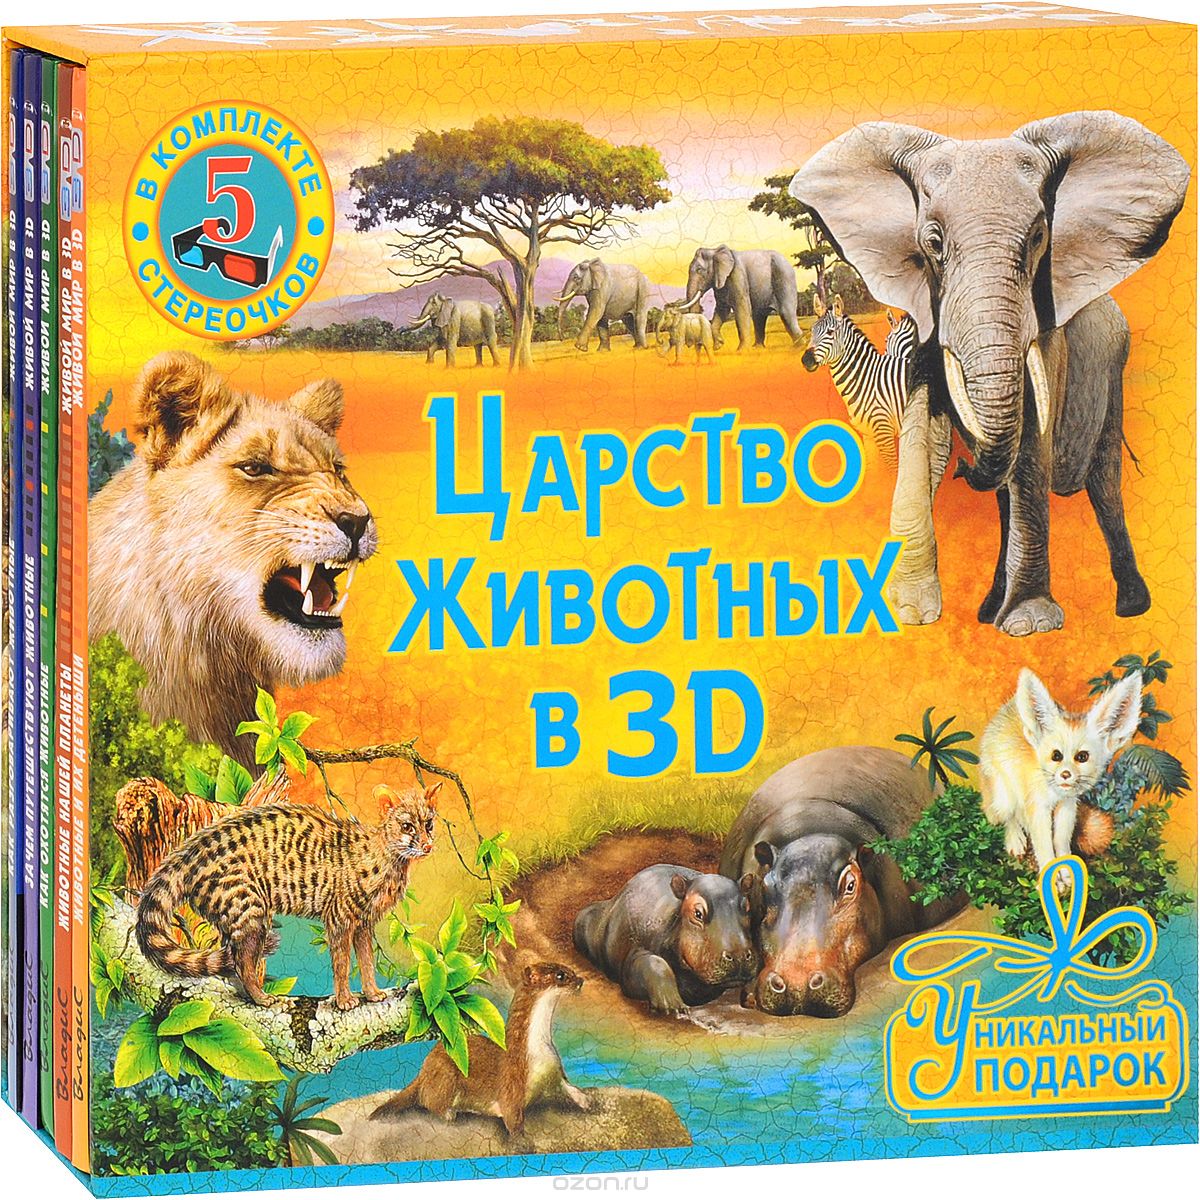 Скачать книгу "Царство животных в 3D (Комплект из 5 книг + 5 пар стереоочков)"